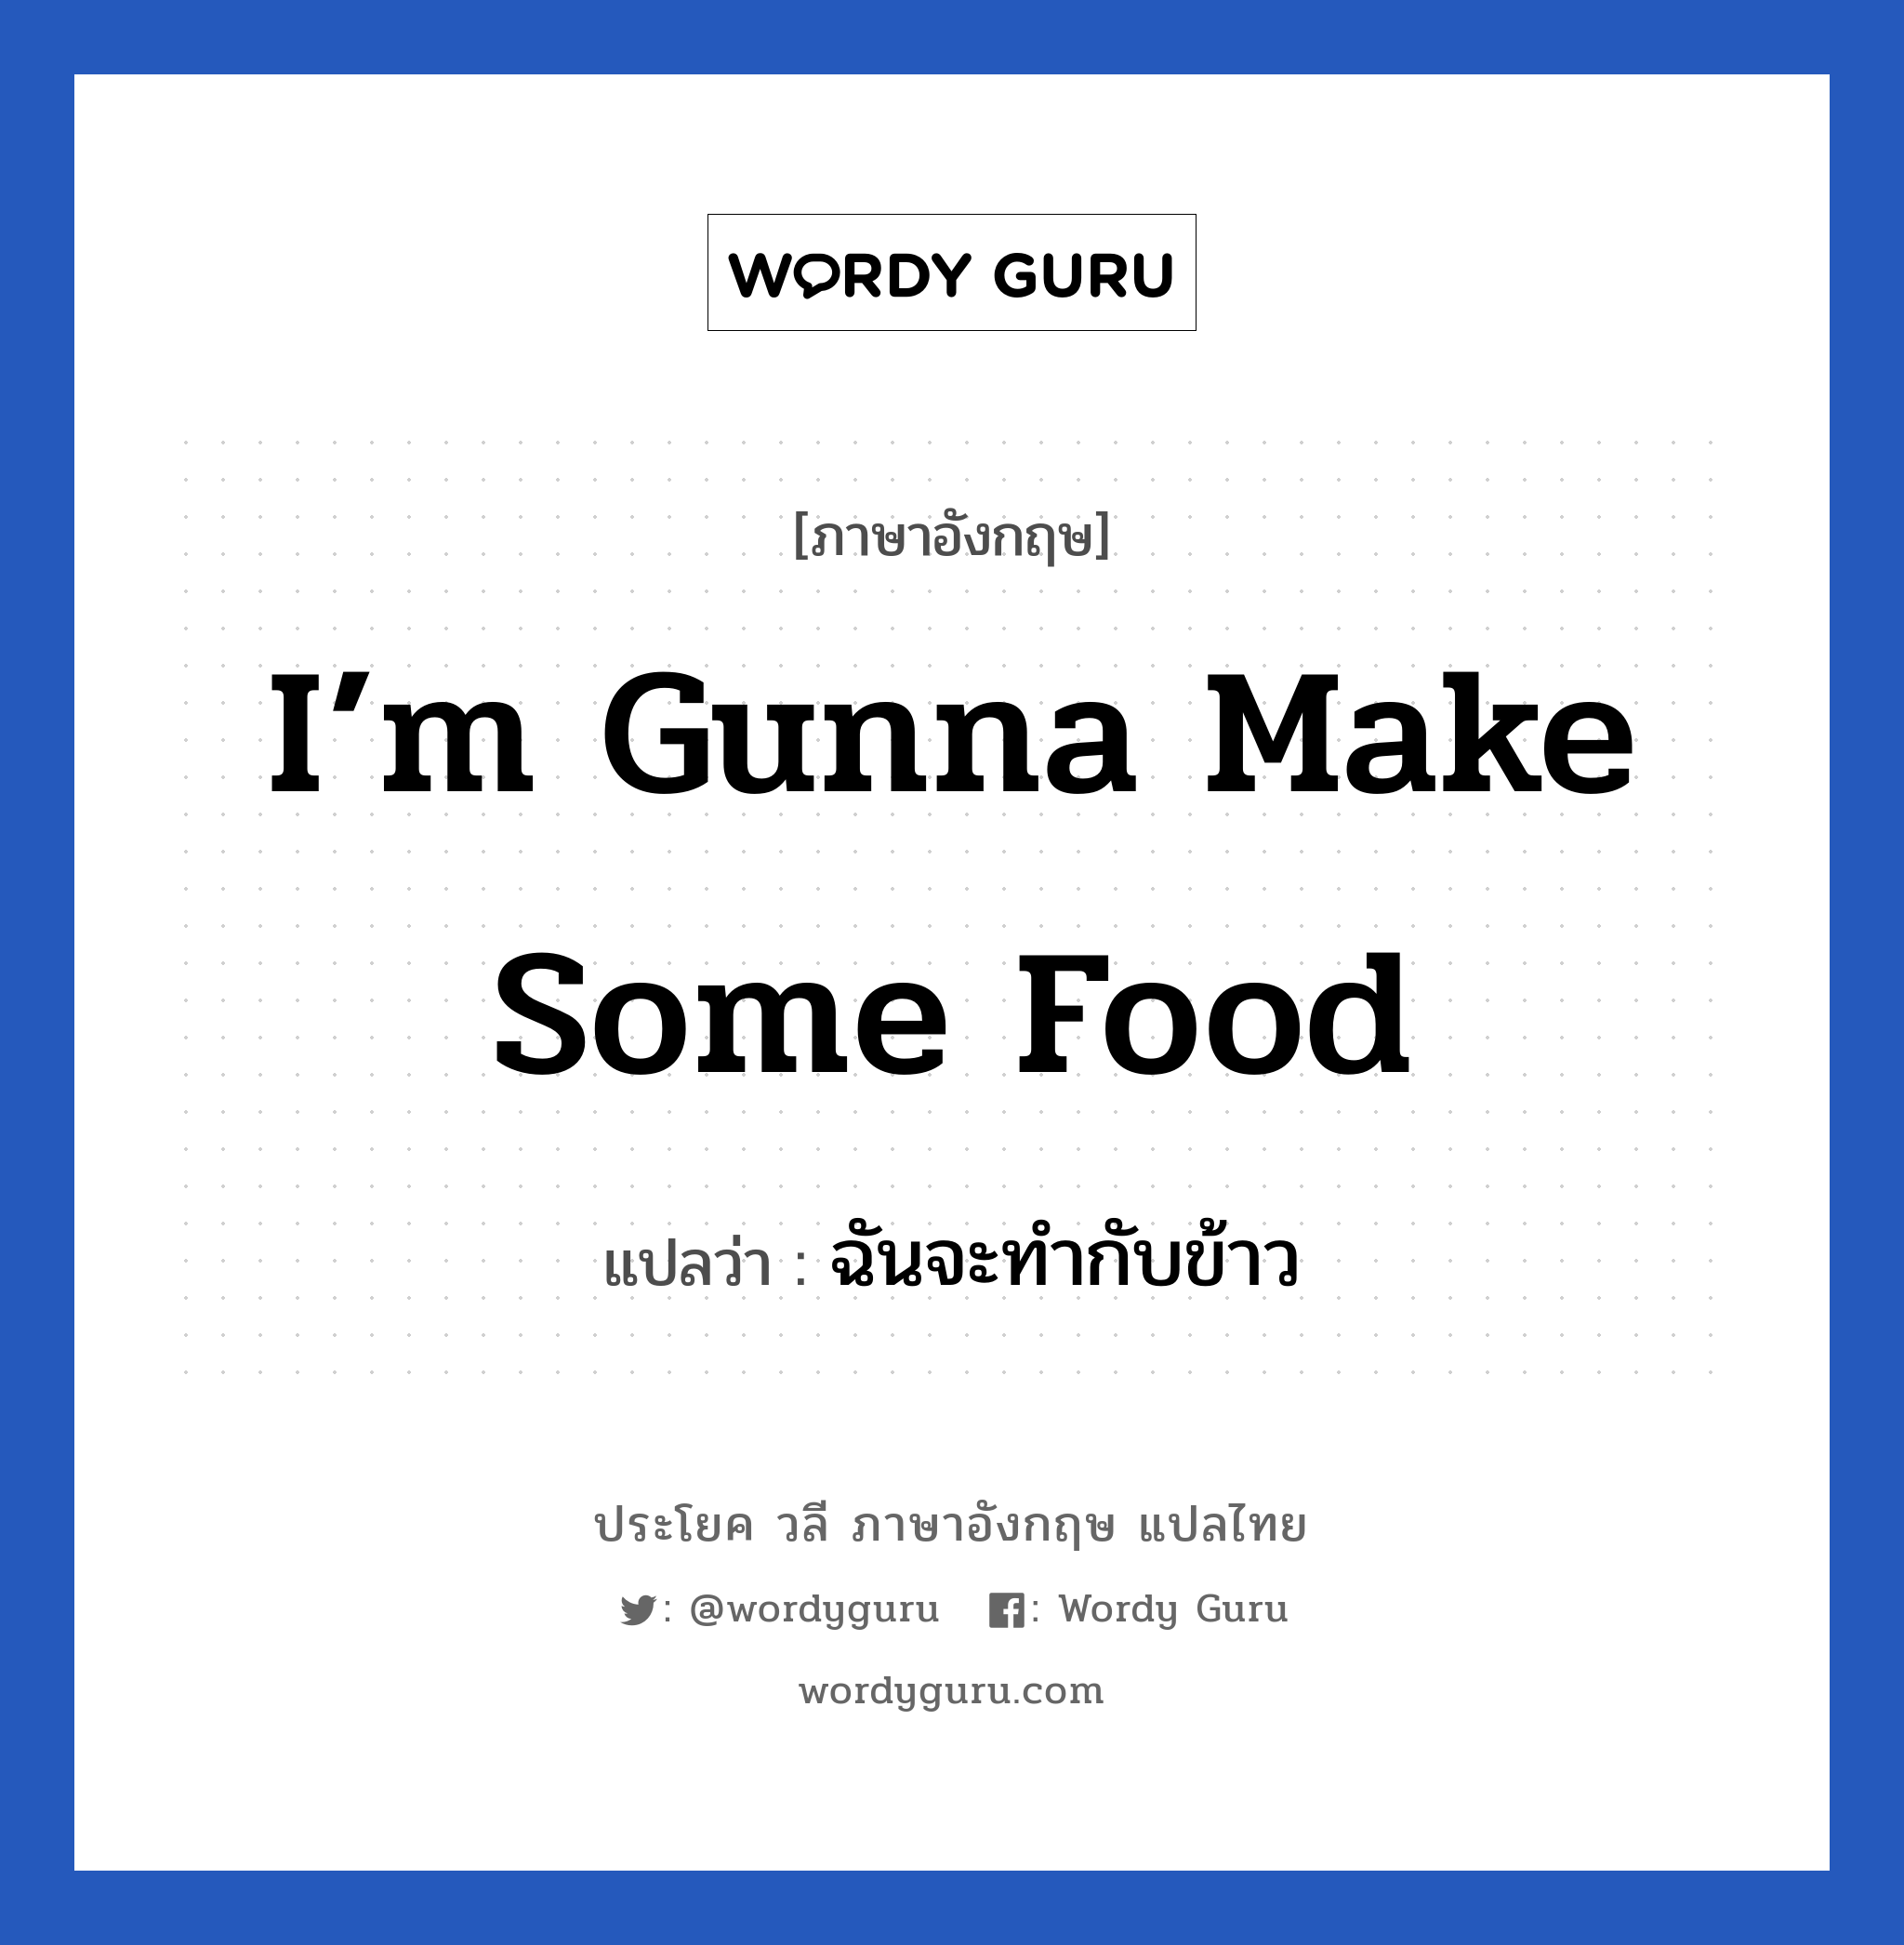 ฉันจะทำกับข้าว ภาษาอังกฤษ?, วลีภาษาอังกฤษ ฉันจะทำกับข้าว แปลว่า I’m gunna make some food